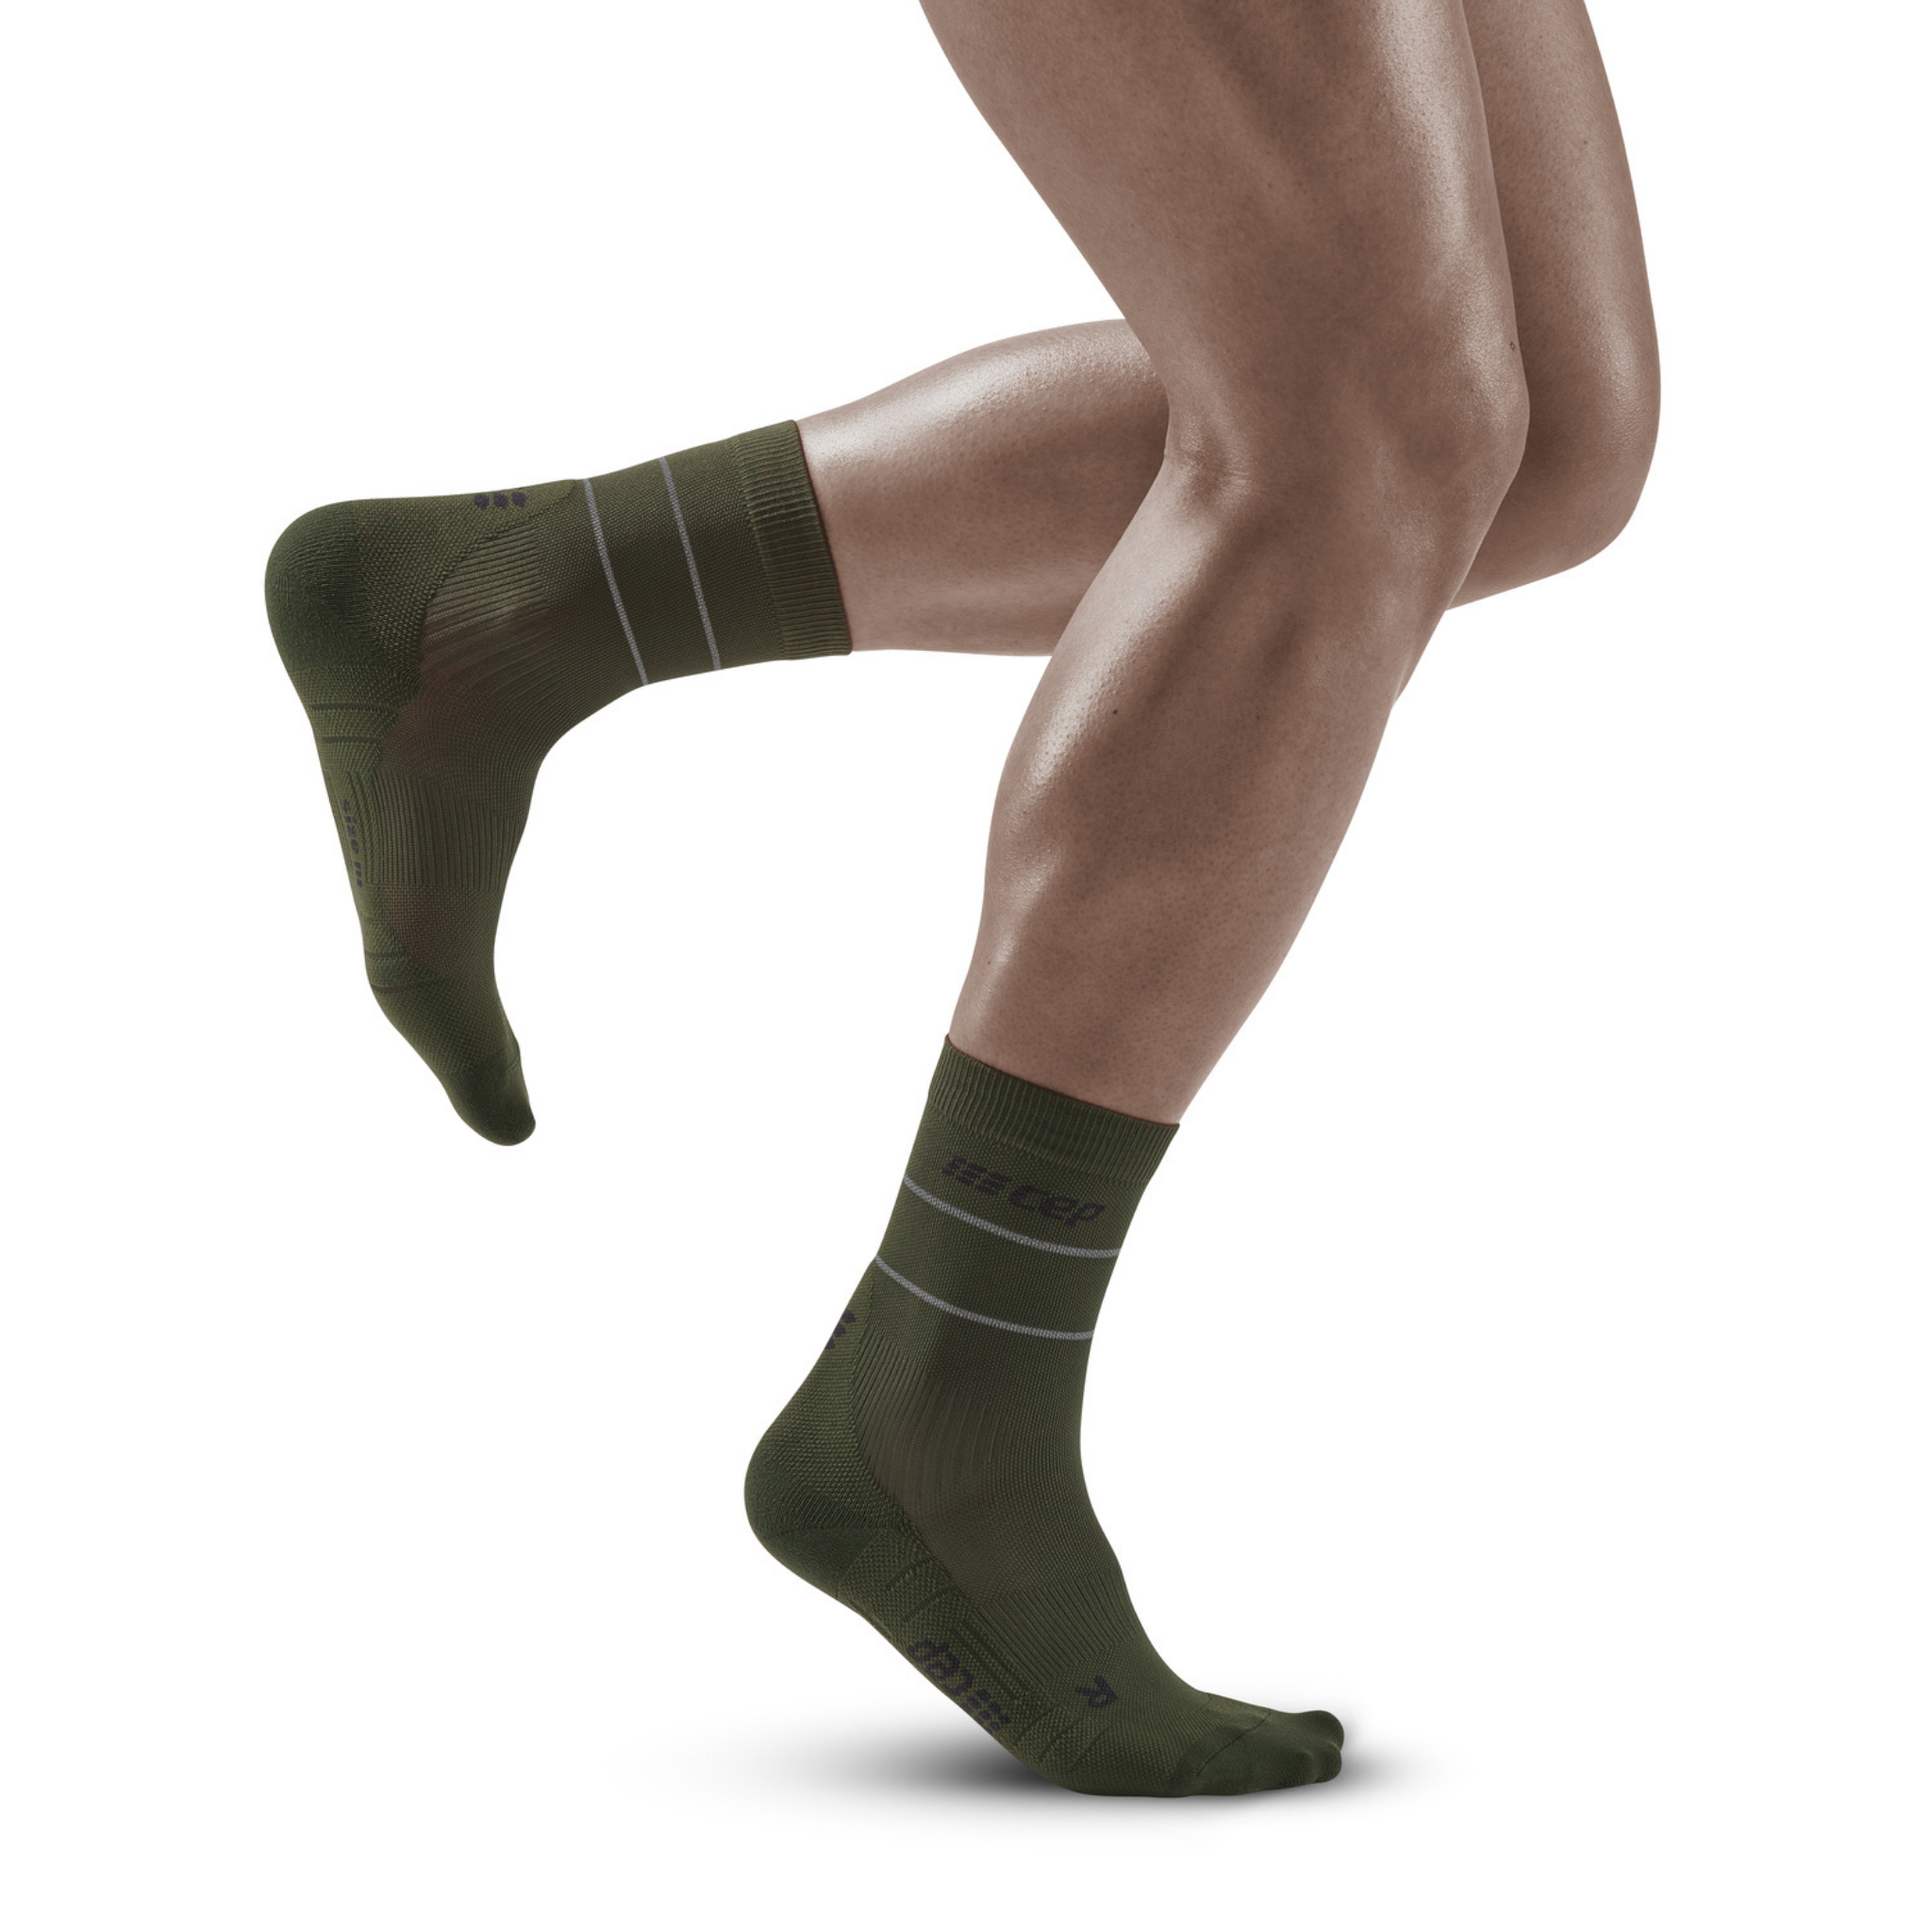 Ανακλαστικές κάλτσες συμπίεσης μέσης κοπής, ανδρικές, σκούρο πράσινο/ασημί